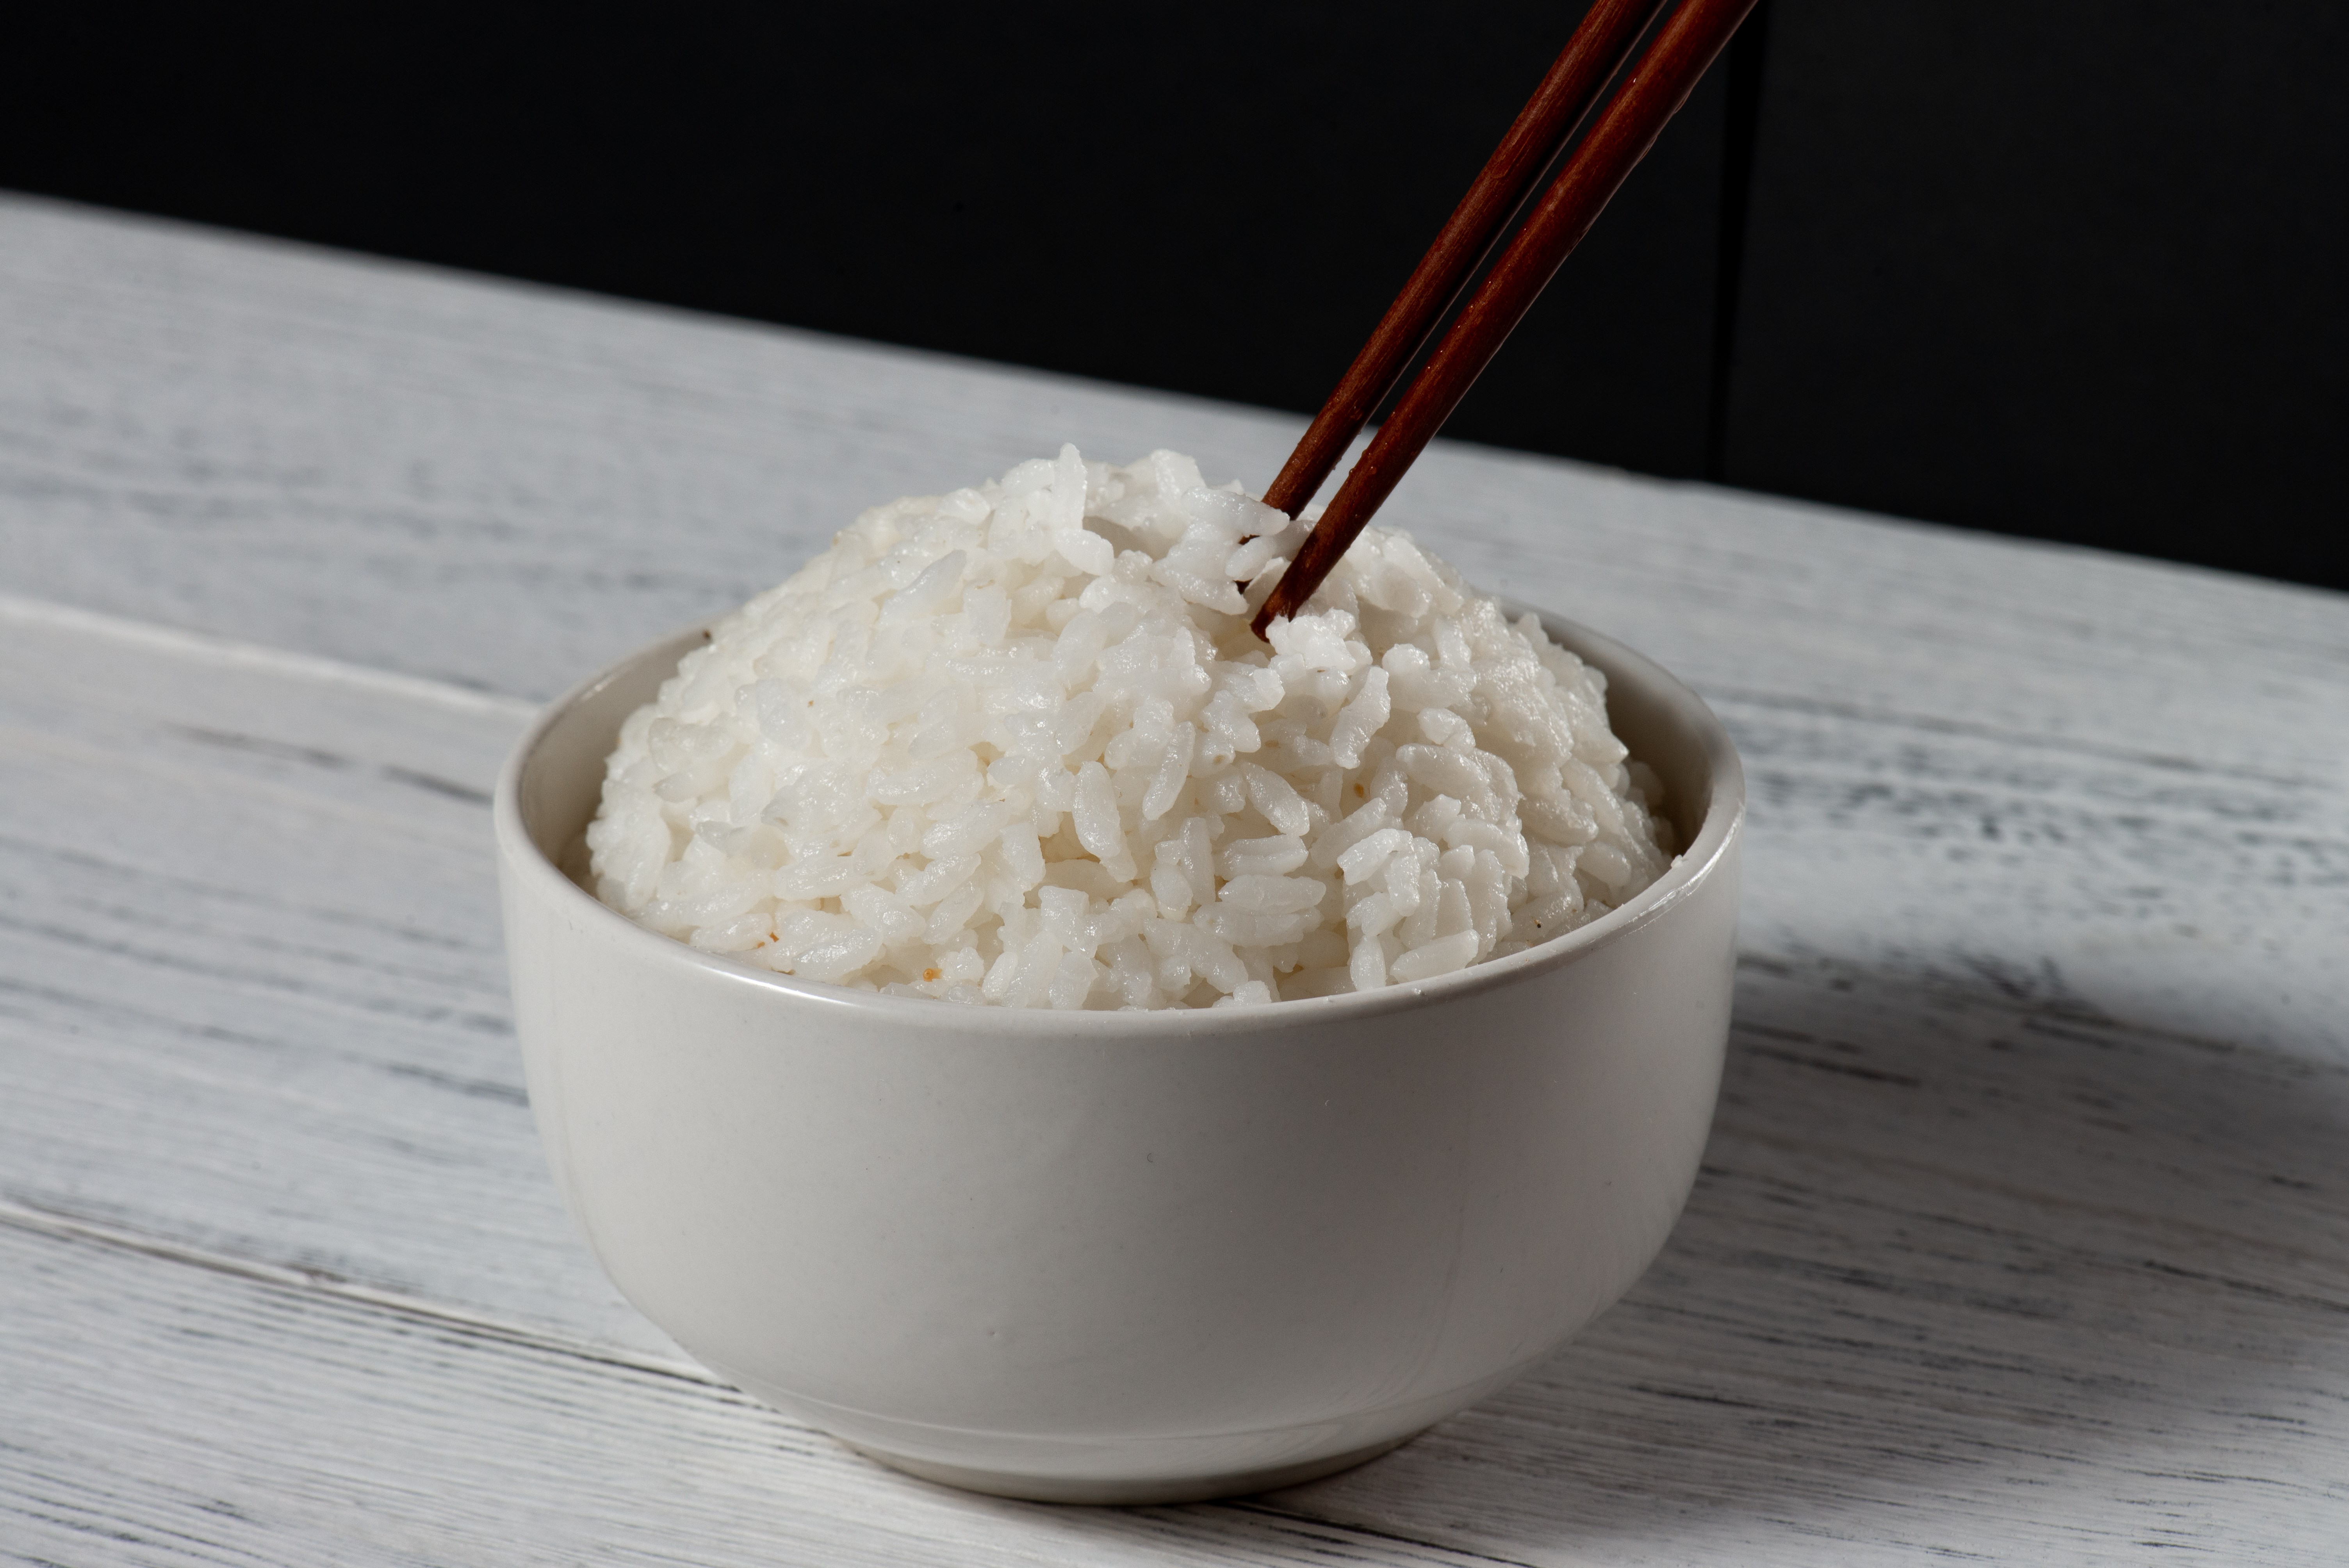 米饭高清美图图片